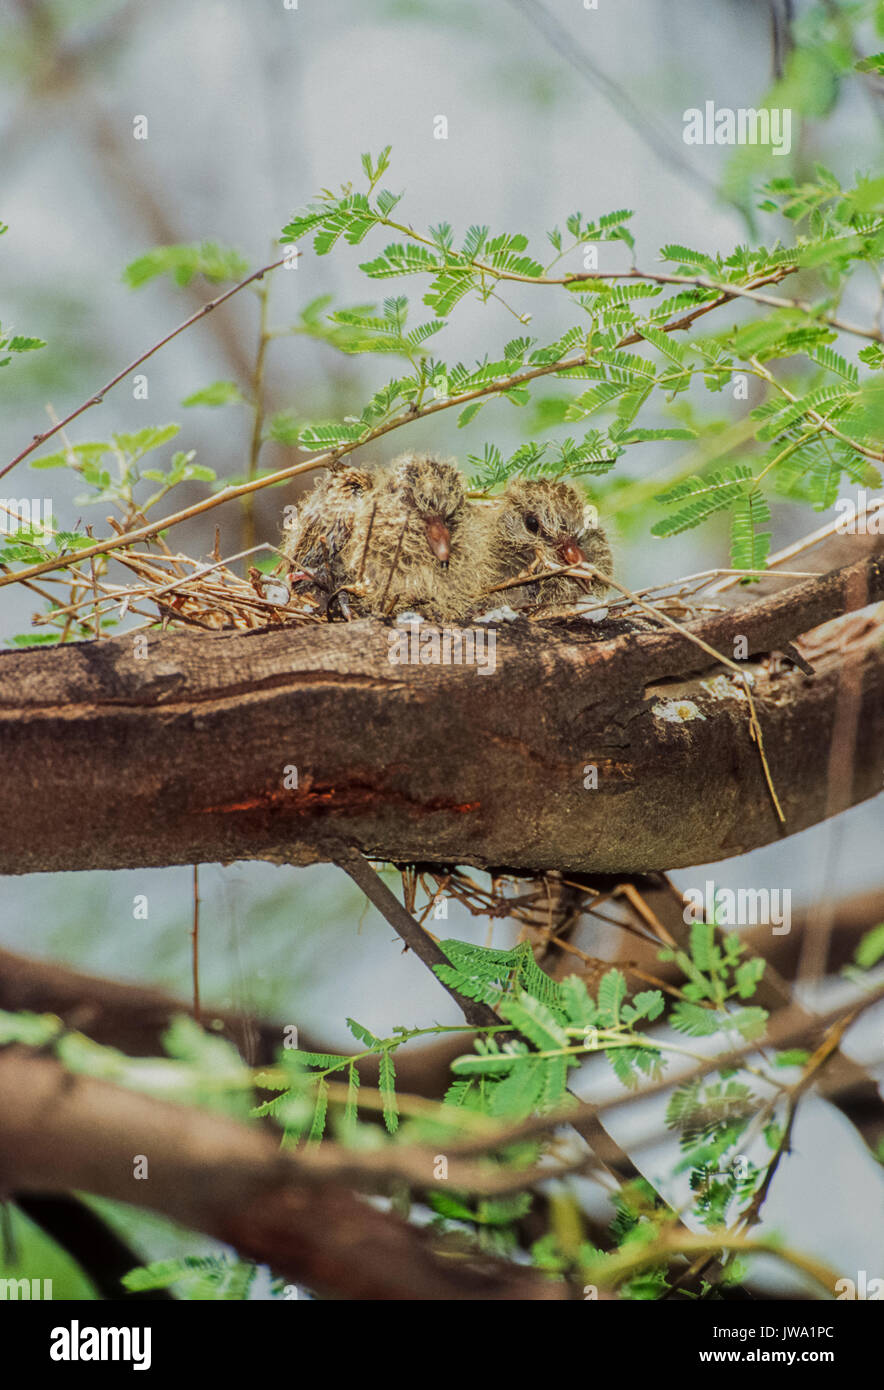 Deux escabs ou poussins de Dove riant (Spilopelia senegalensis), en nid de brindilles, parc national de Keoladeo Ghana, Bharatpur, Rajasthan, Inde Banque D'Images